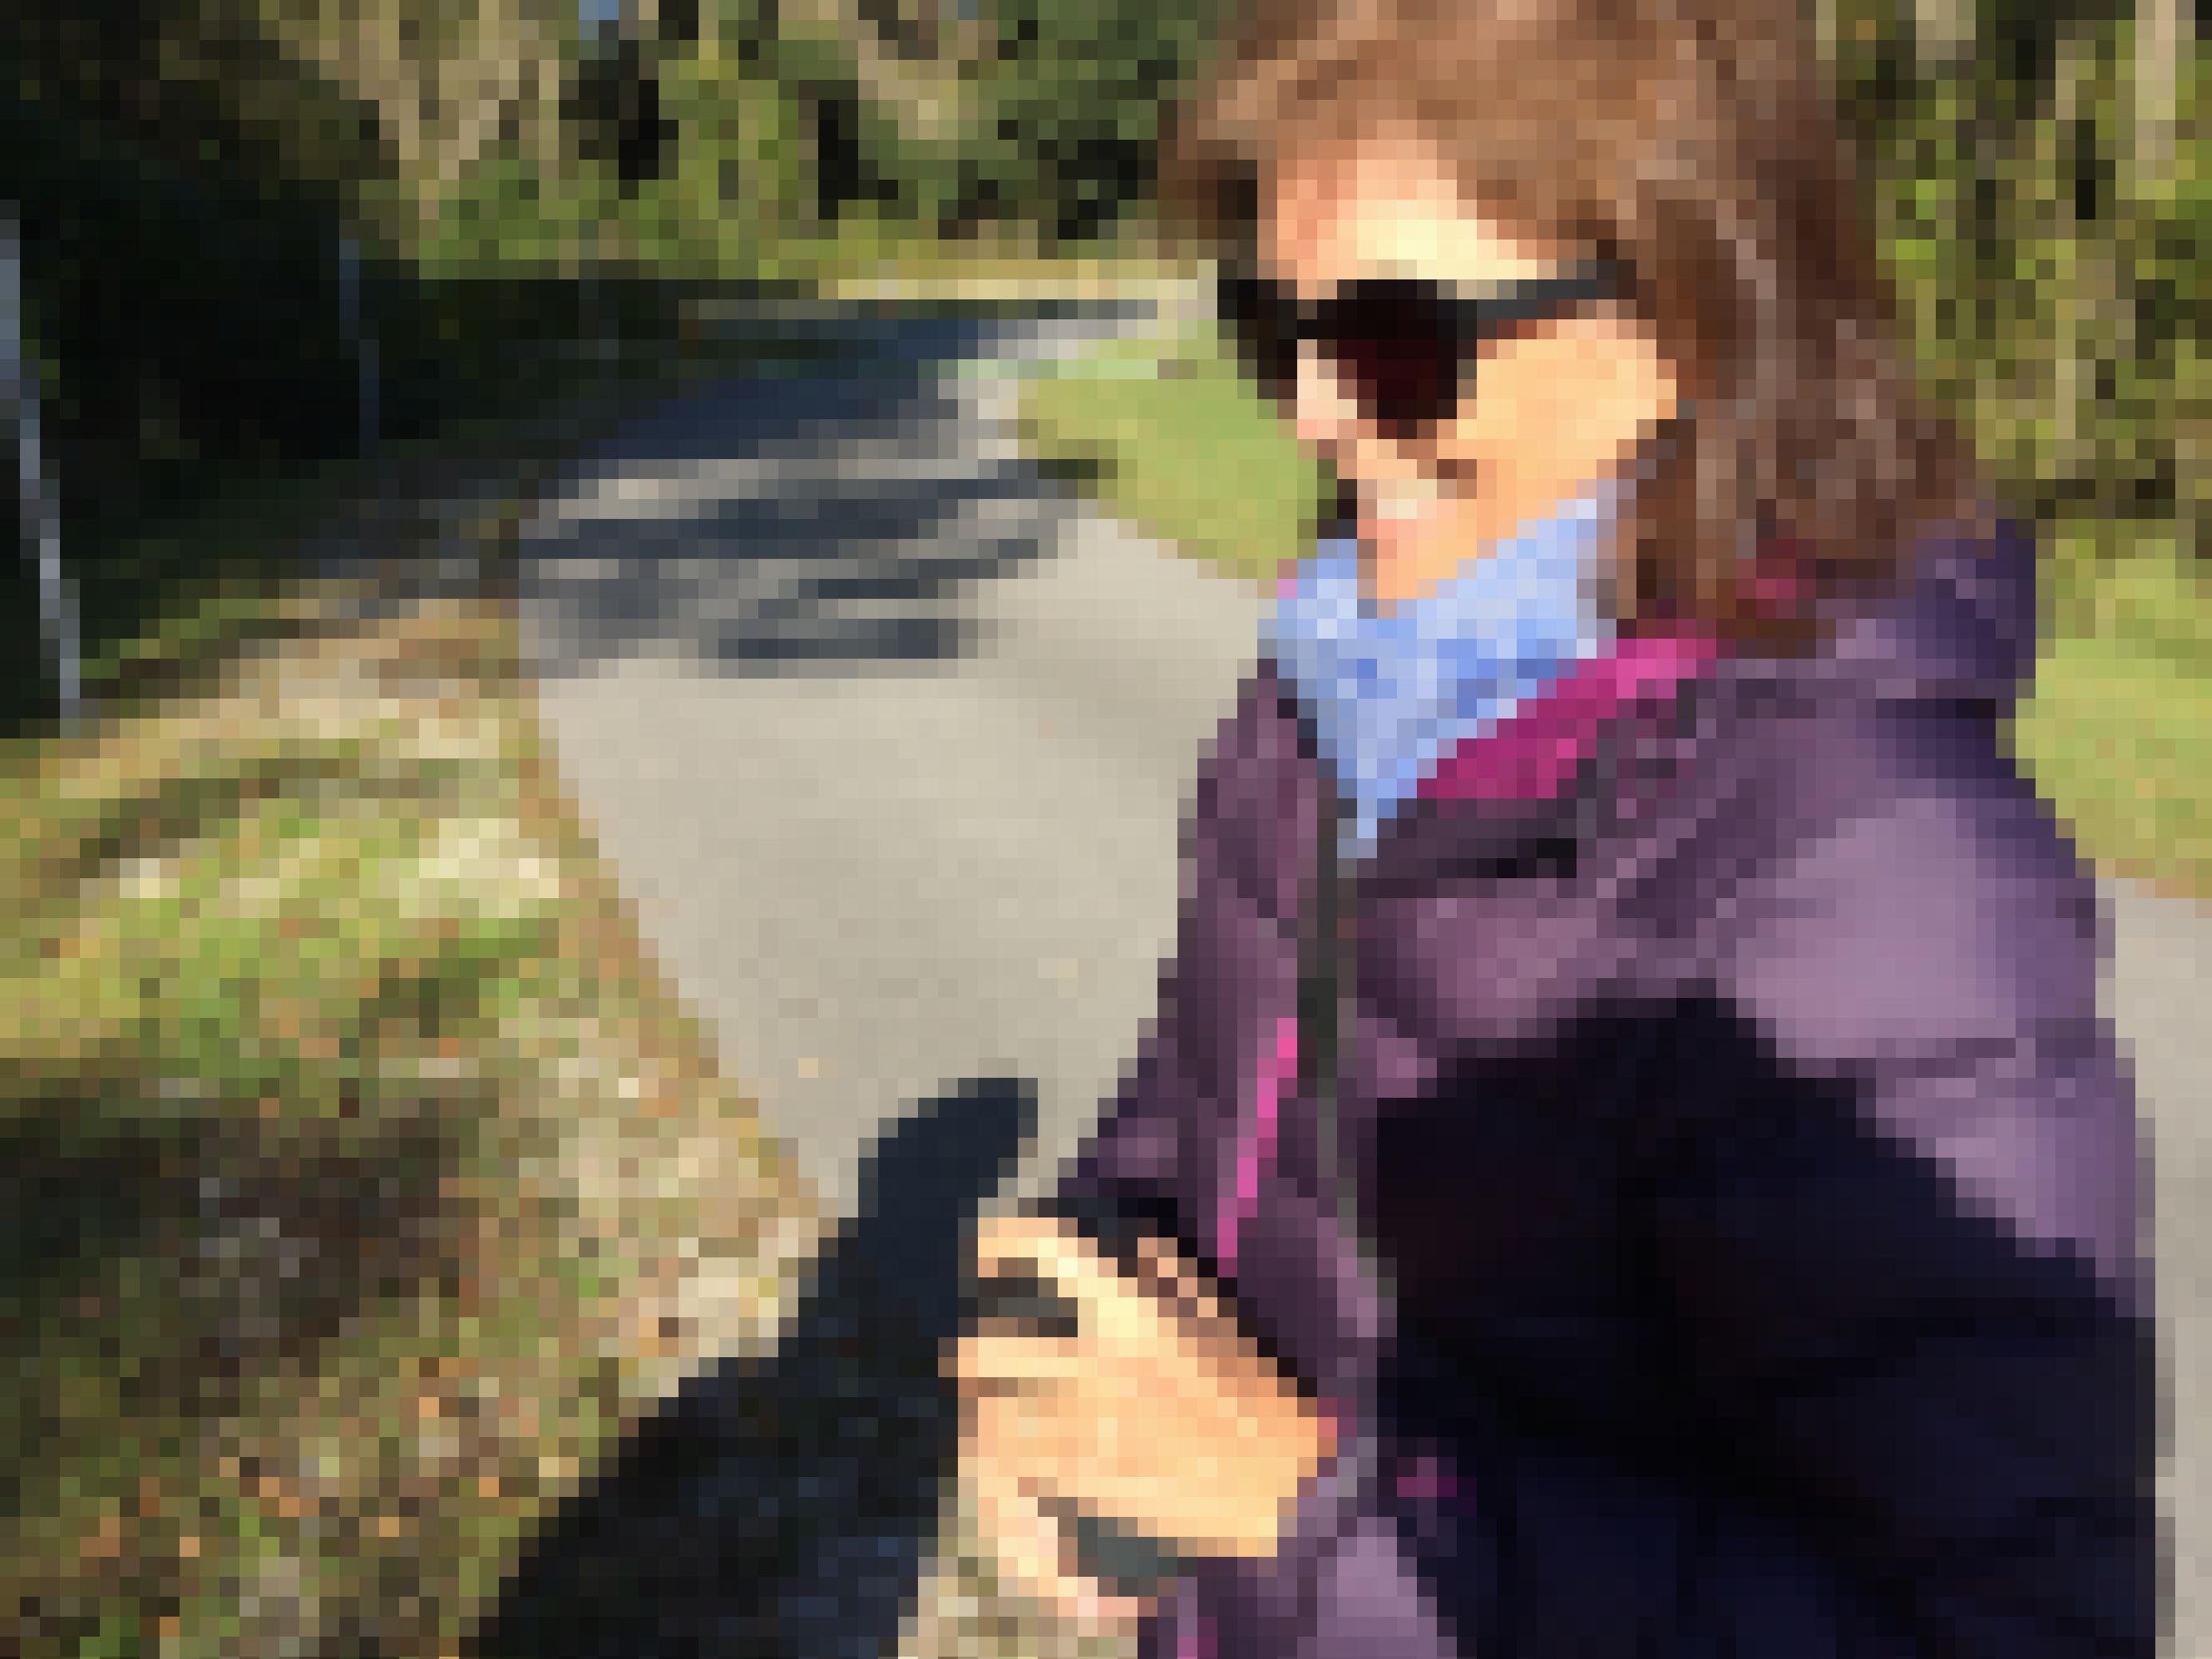 Eine Frau mit Sonnenbrille, schulterlangem braunen Haar und einer Daunenjacke steht lächelnd in der Sonne. In der Hand hält sie einen kleinen schwarzen Lautsprecher.